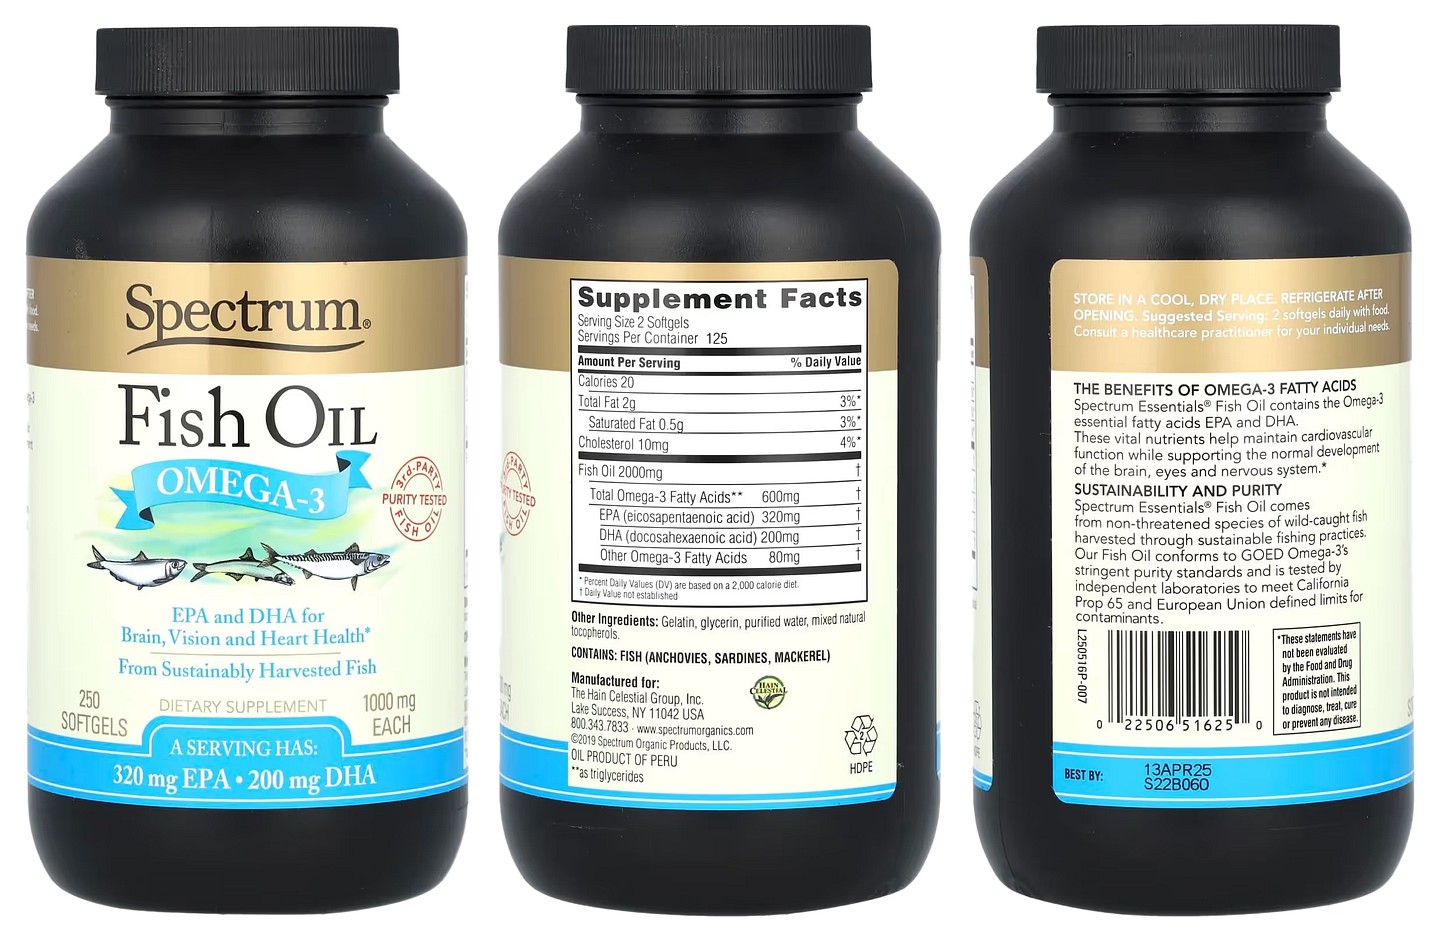 Spectrum Essentials, Fish Oil packaging